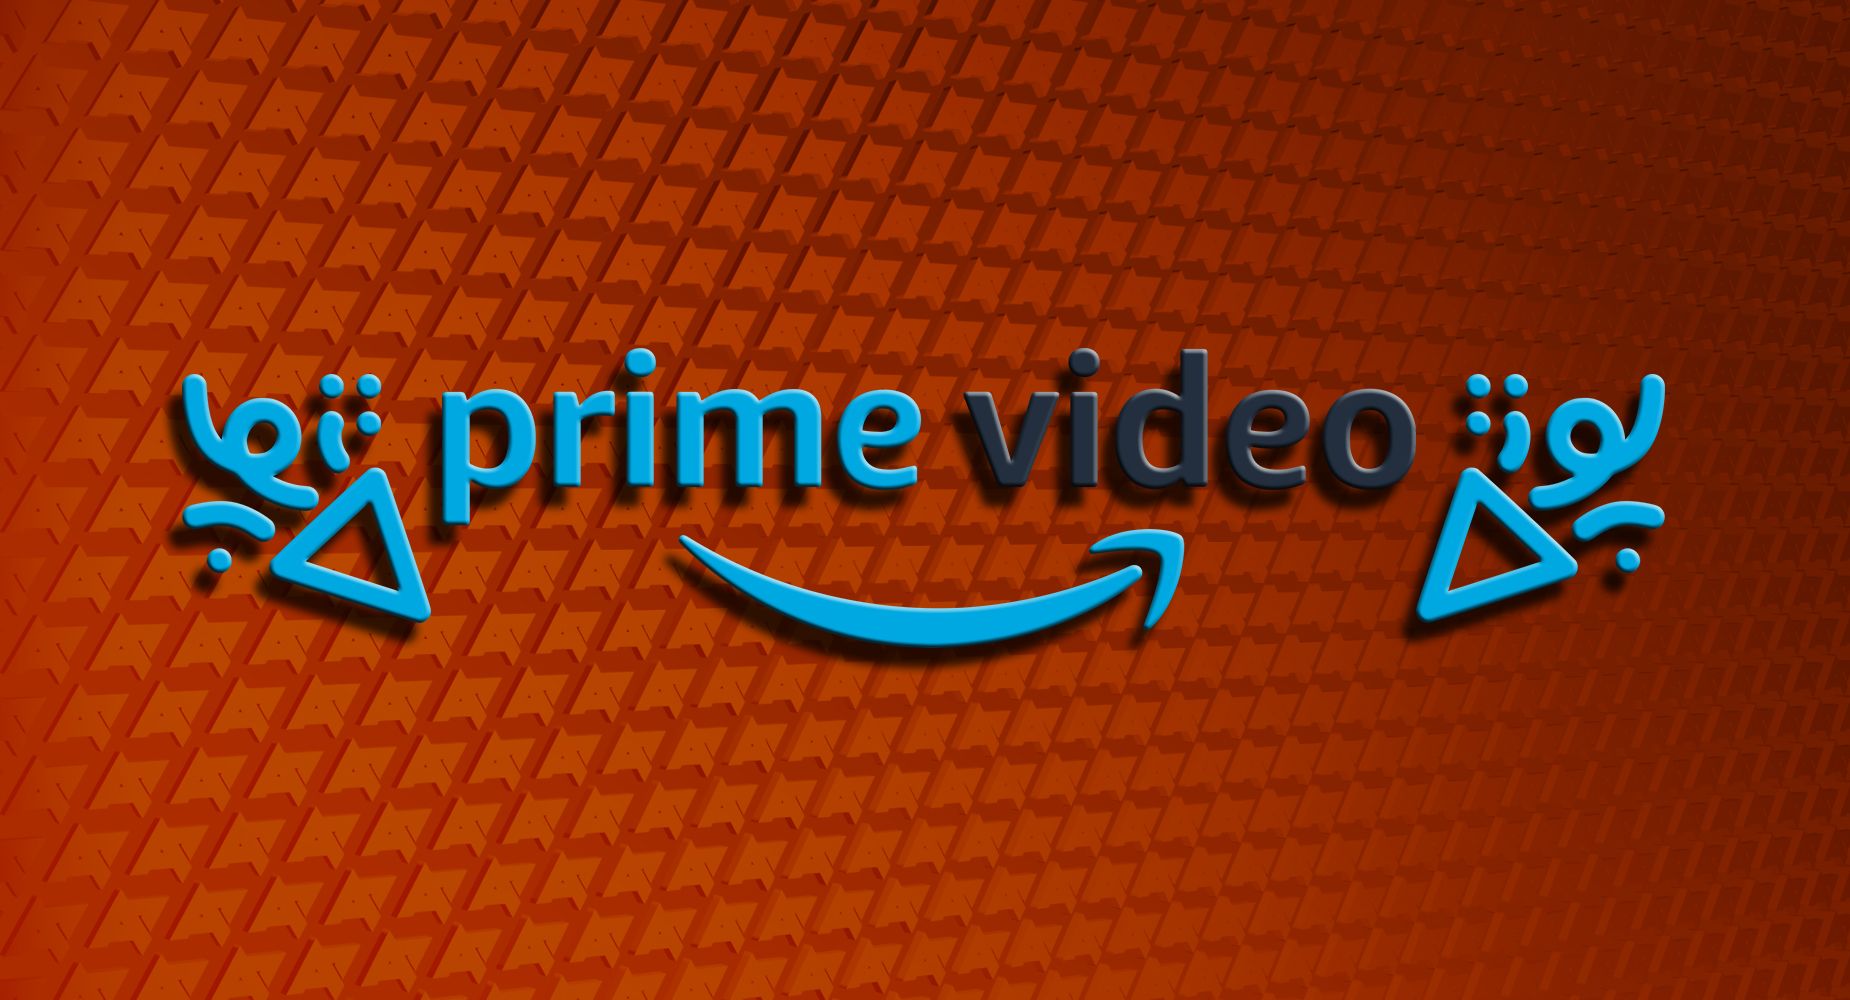 Logotipo do Amazon Prime Video ladeado por ícones do Watch Party sobre uma série de logotipos da AP